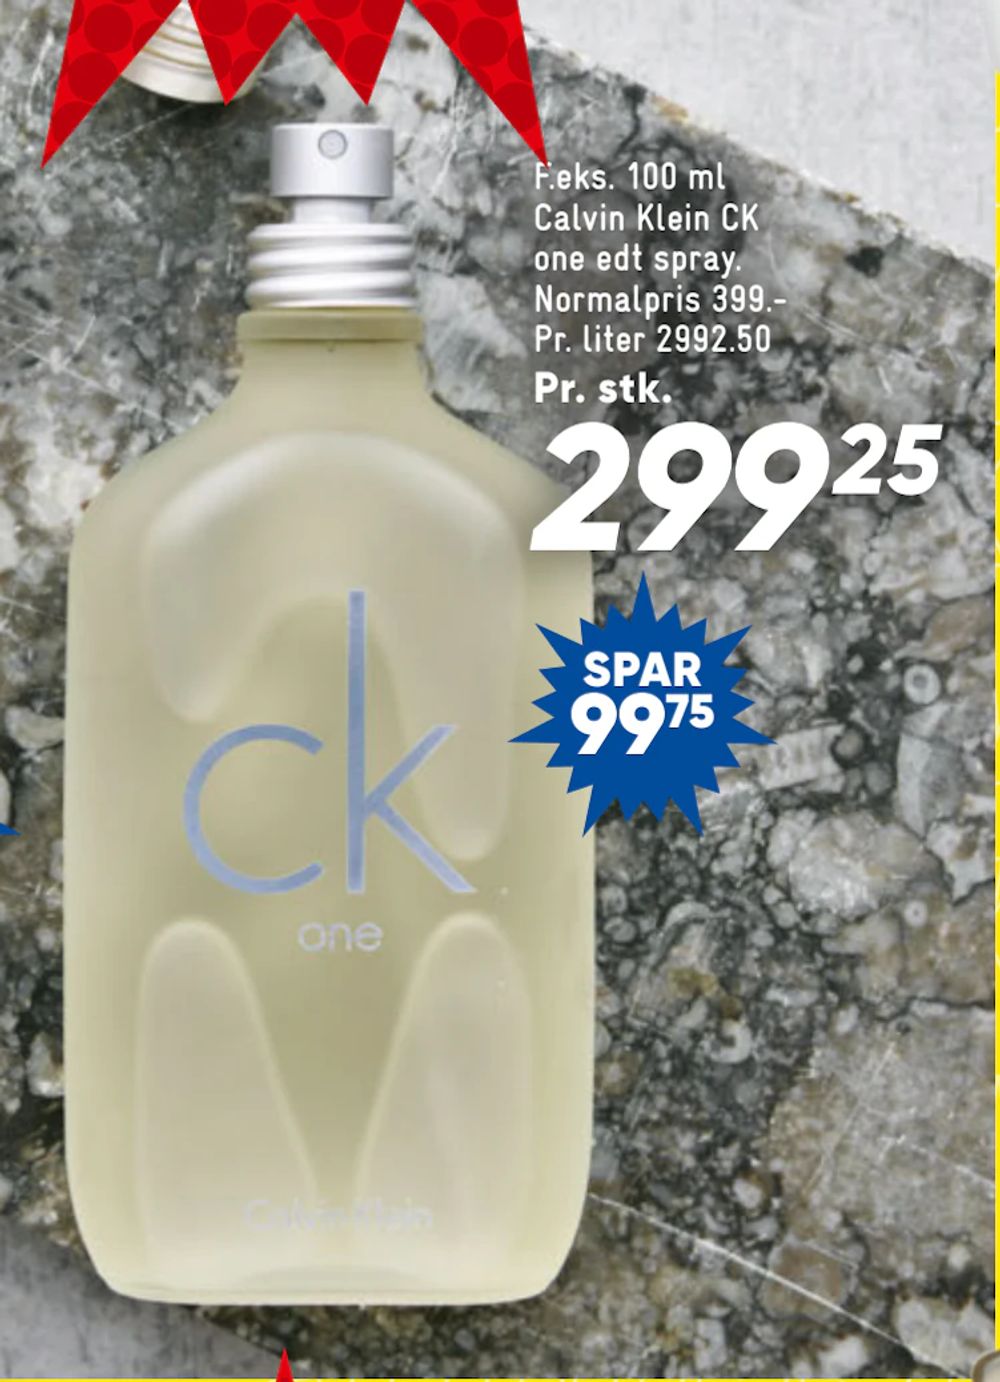 Tilbud på 100 ml Calvin Klein CK one edt spray fra Bilka til 299,25 kr.